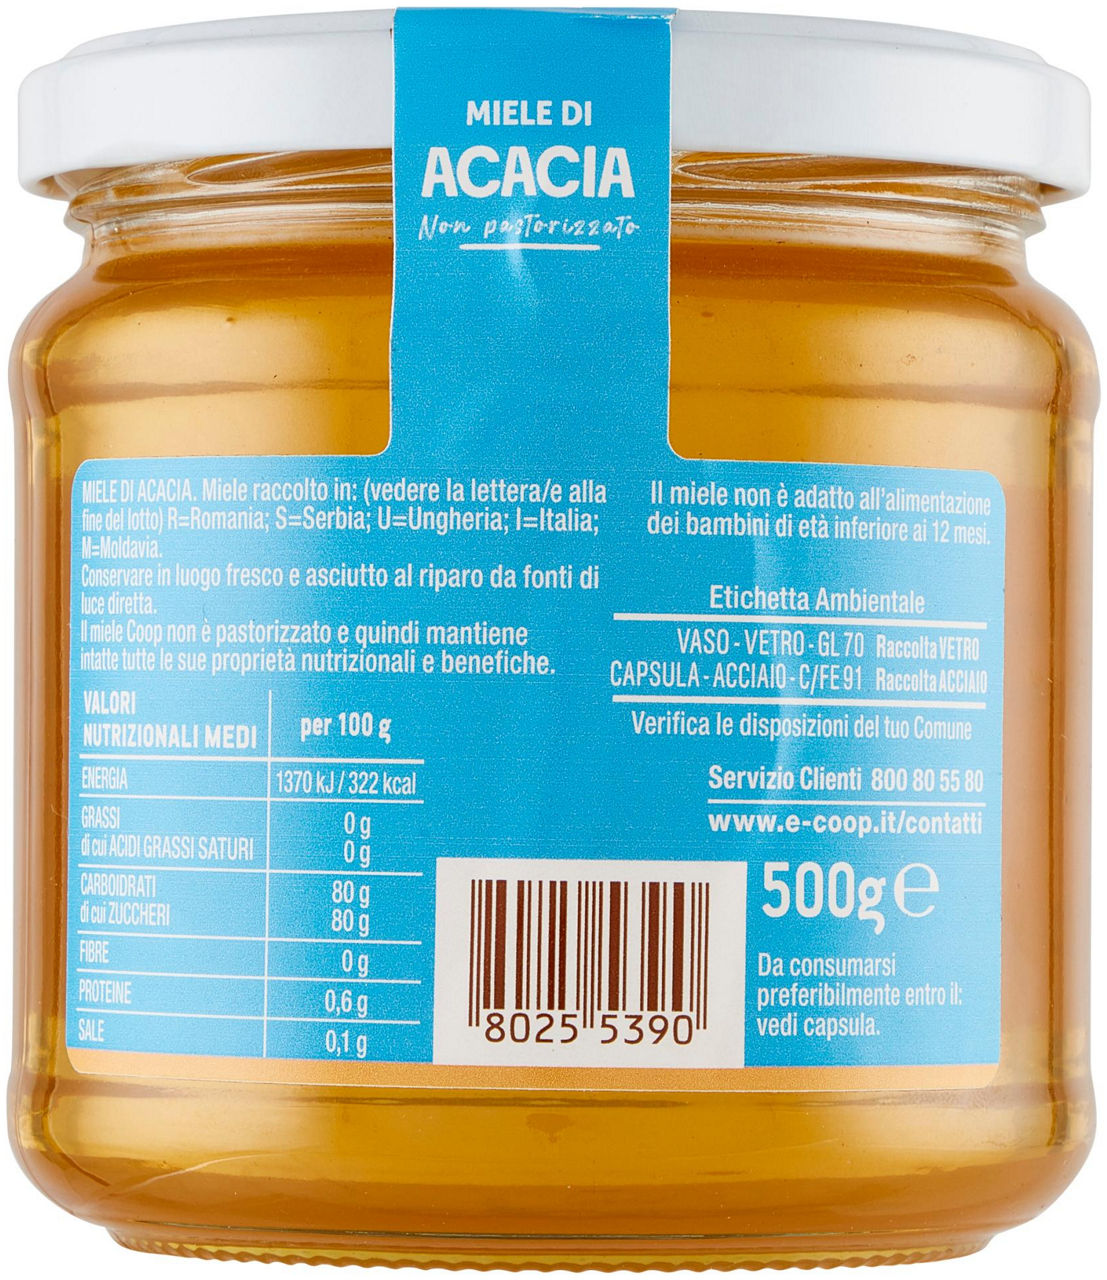 Miele di acacia 500 g - 4